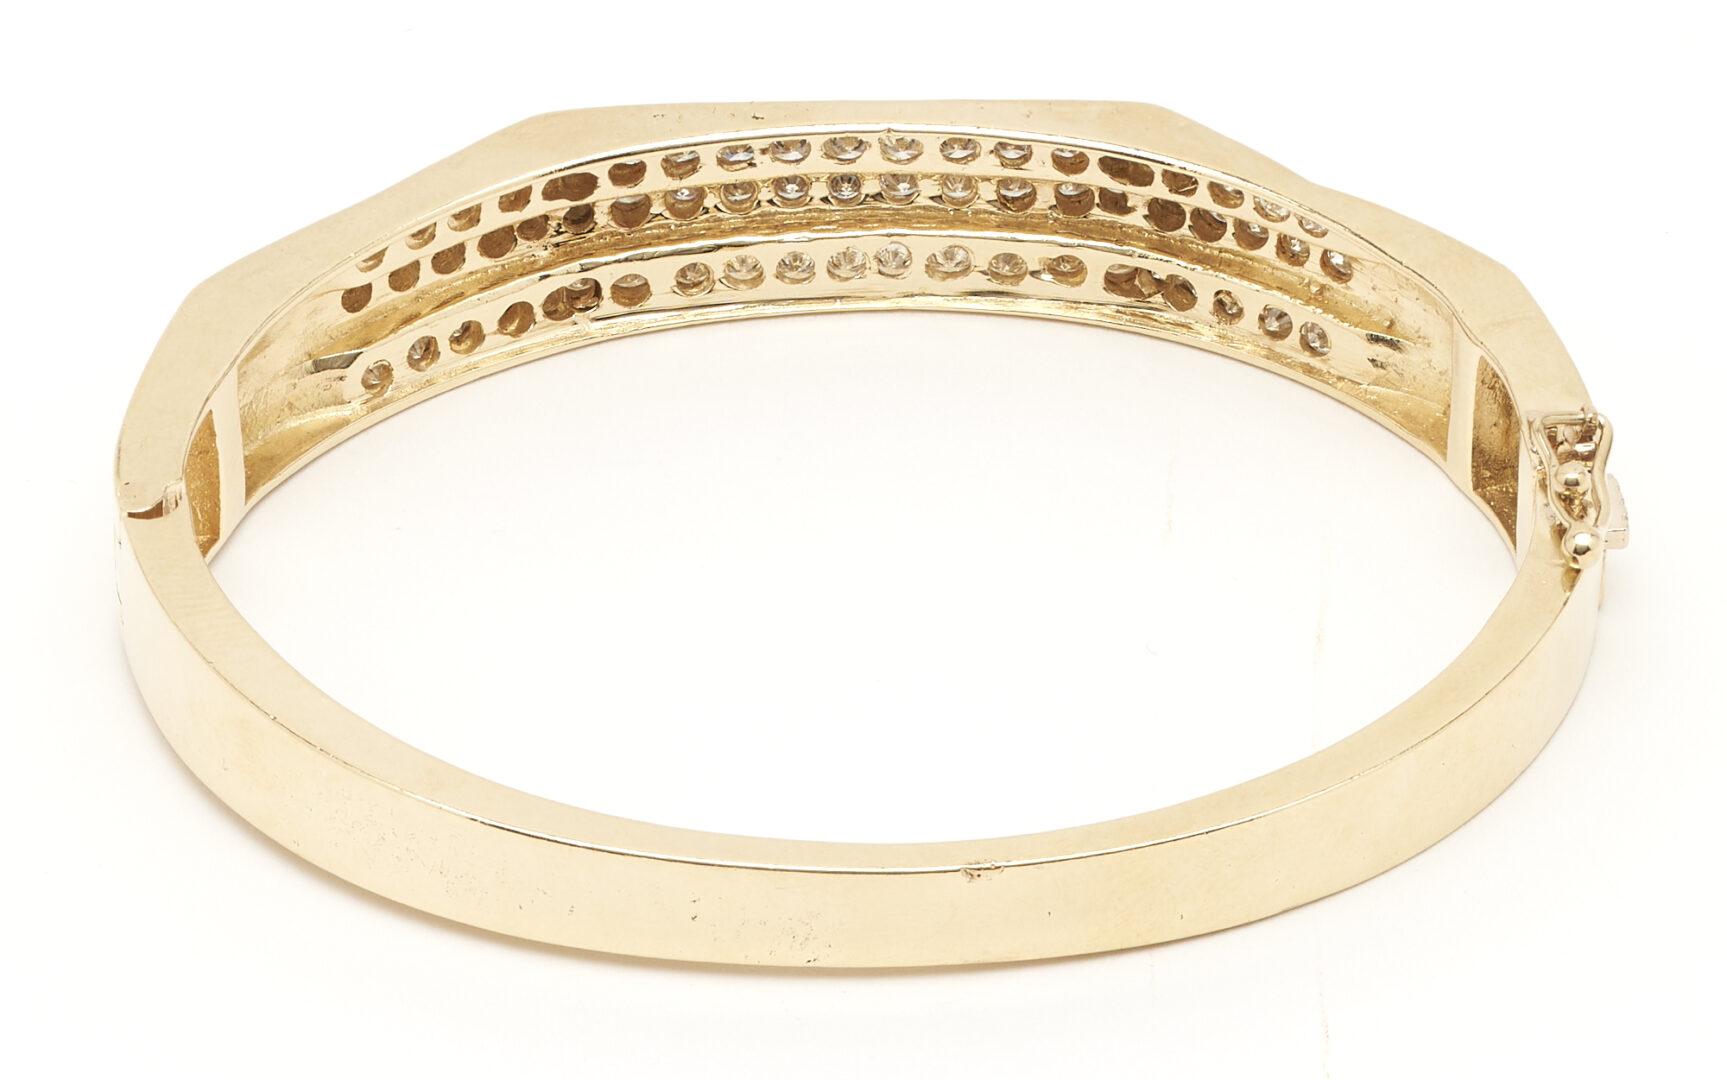 Lot 307: 14K Gold & Diamond Bangle Bracelet